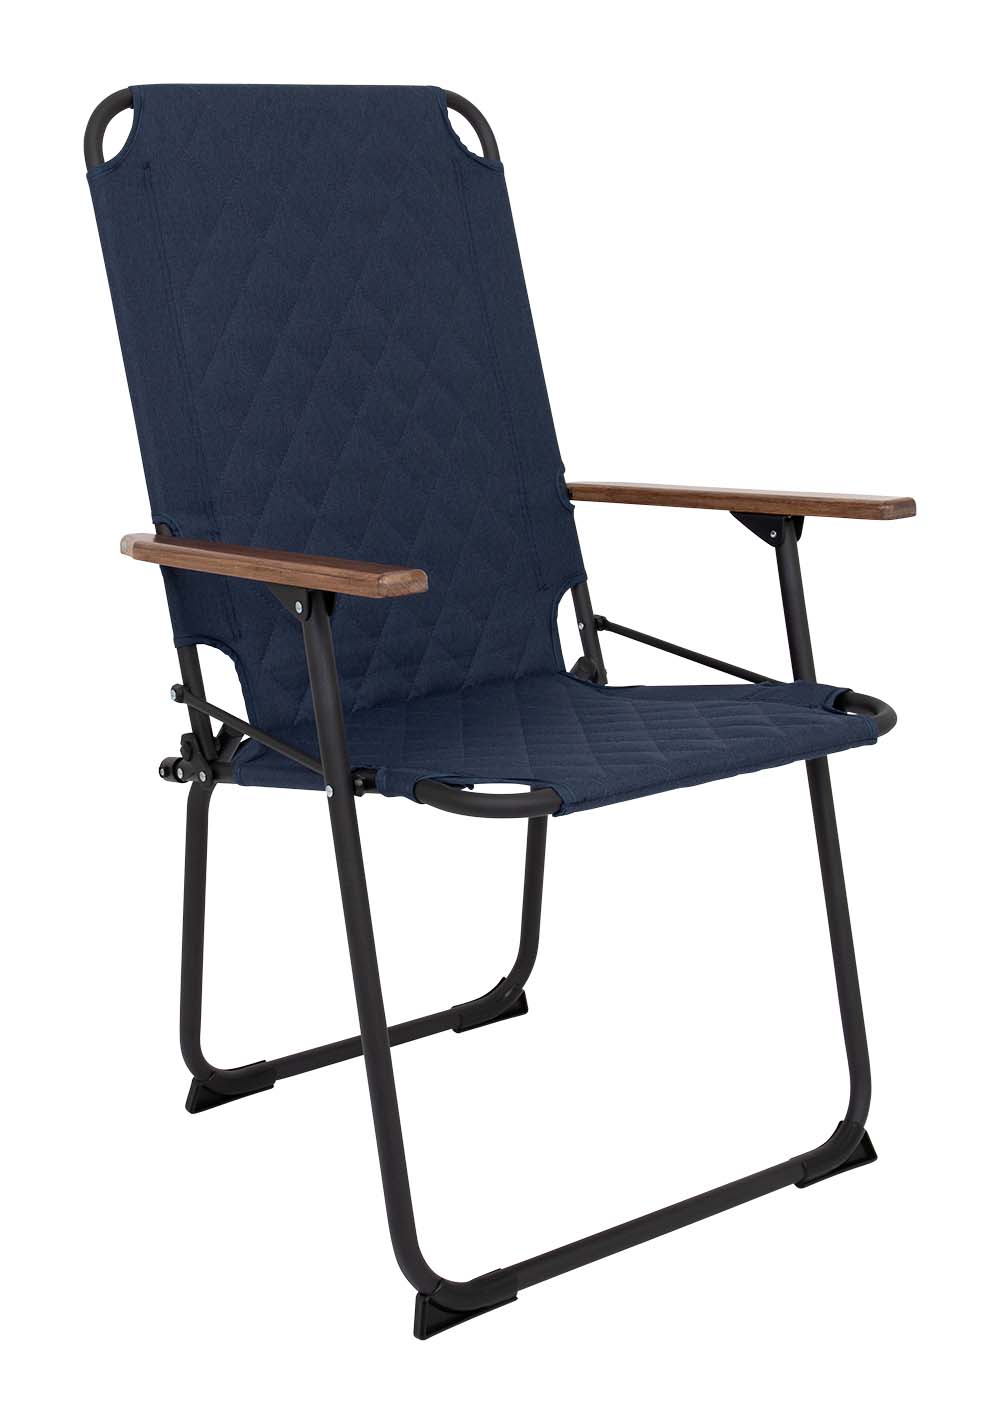 1211887 "Een extra hoge en brede comfortabele klapstoel. De klassieker met een moderne industriële uitstraling. Een stoel waarbij stijl, comfort en functionaliteit worden gecombineerd. Voorzien van een gepolsterde Cationic bekleding voor ultiem comfort, een lichtgewicht aluminium frame en bamboe armleggers. Daarnaast is het stiksel voorzien van een modern patroon. Een ideale stoel voor in de tuin of op de camping, maar ook op het balkon en in de woonkamer. Daarnaast is deze stoel voorzien van extra stabilisatoren en een 'safety-lock' tegen ongewenst inklappen. Compact mee te nemen."